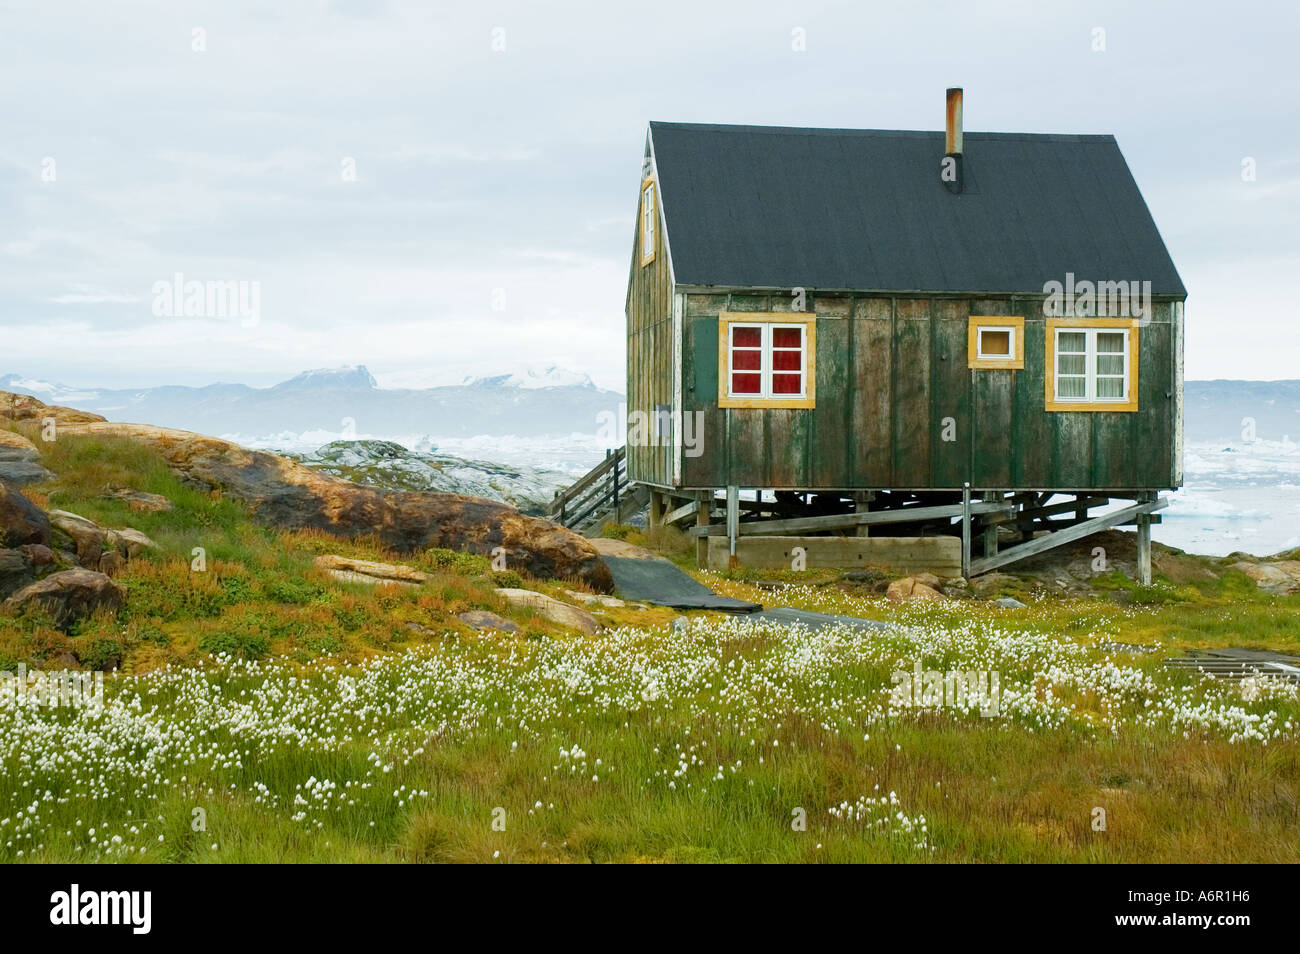 Inuit hut at the village of Tiniteqilâq, Sermilik Fjord, East Greenland Stock Photo